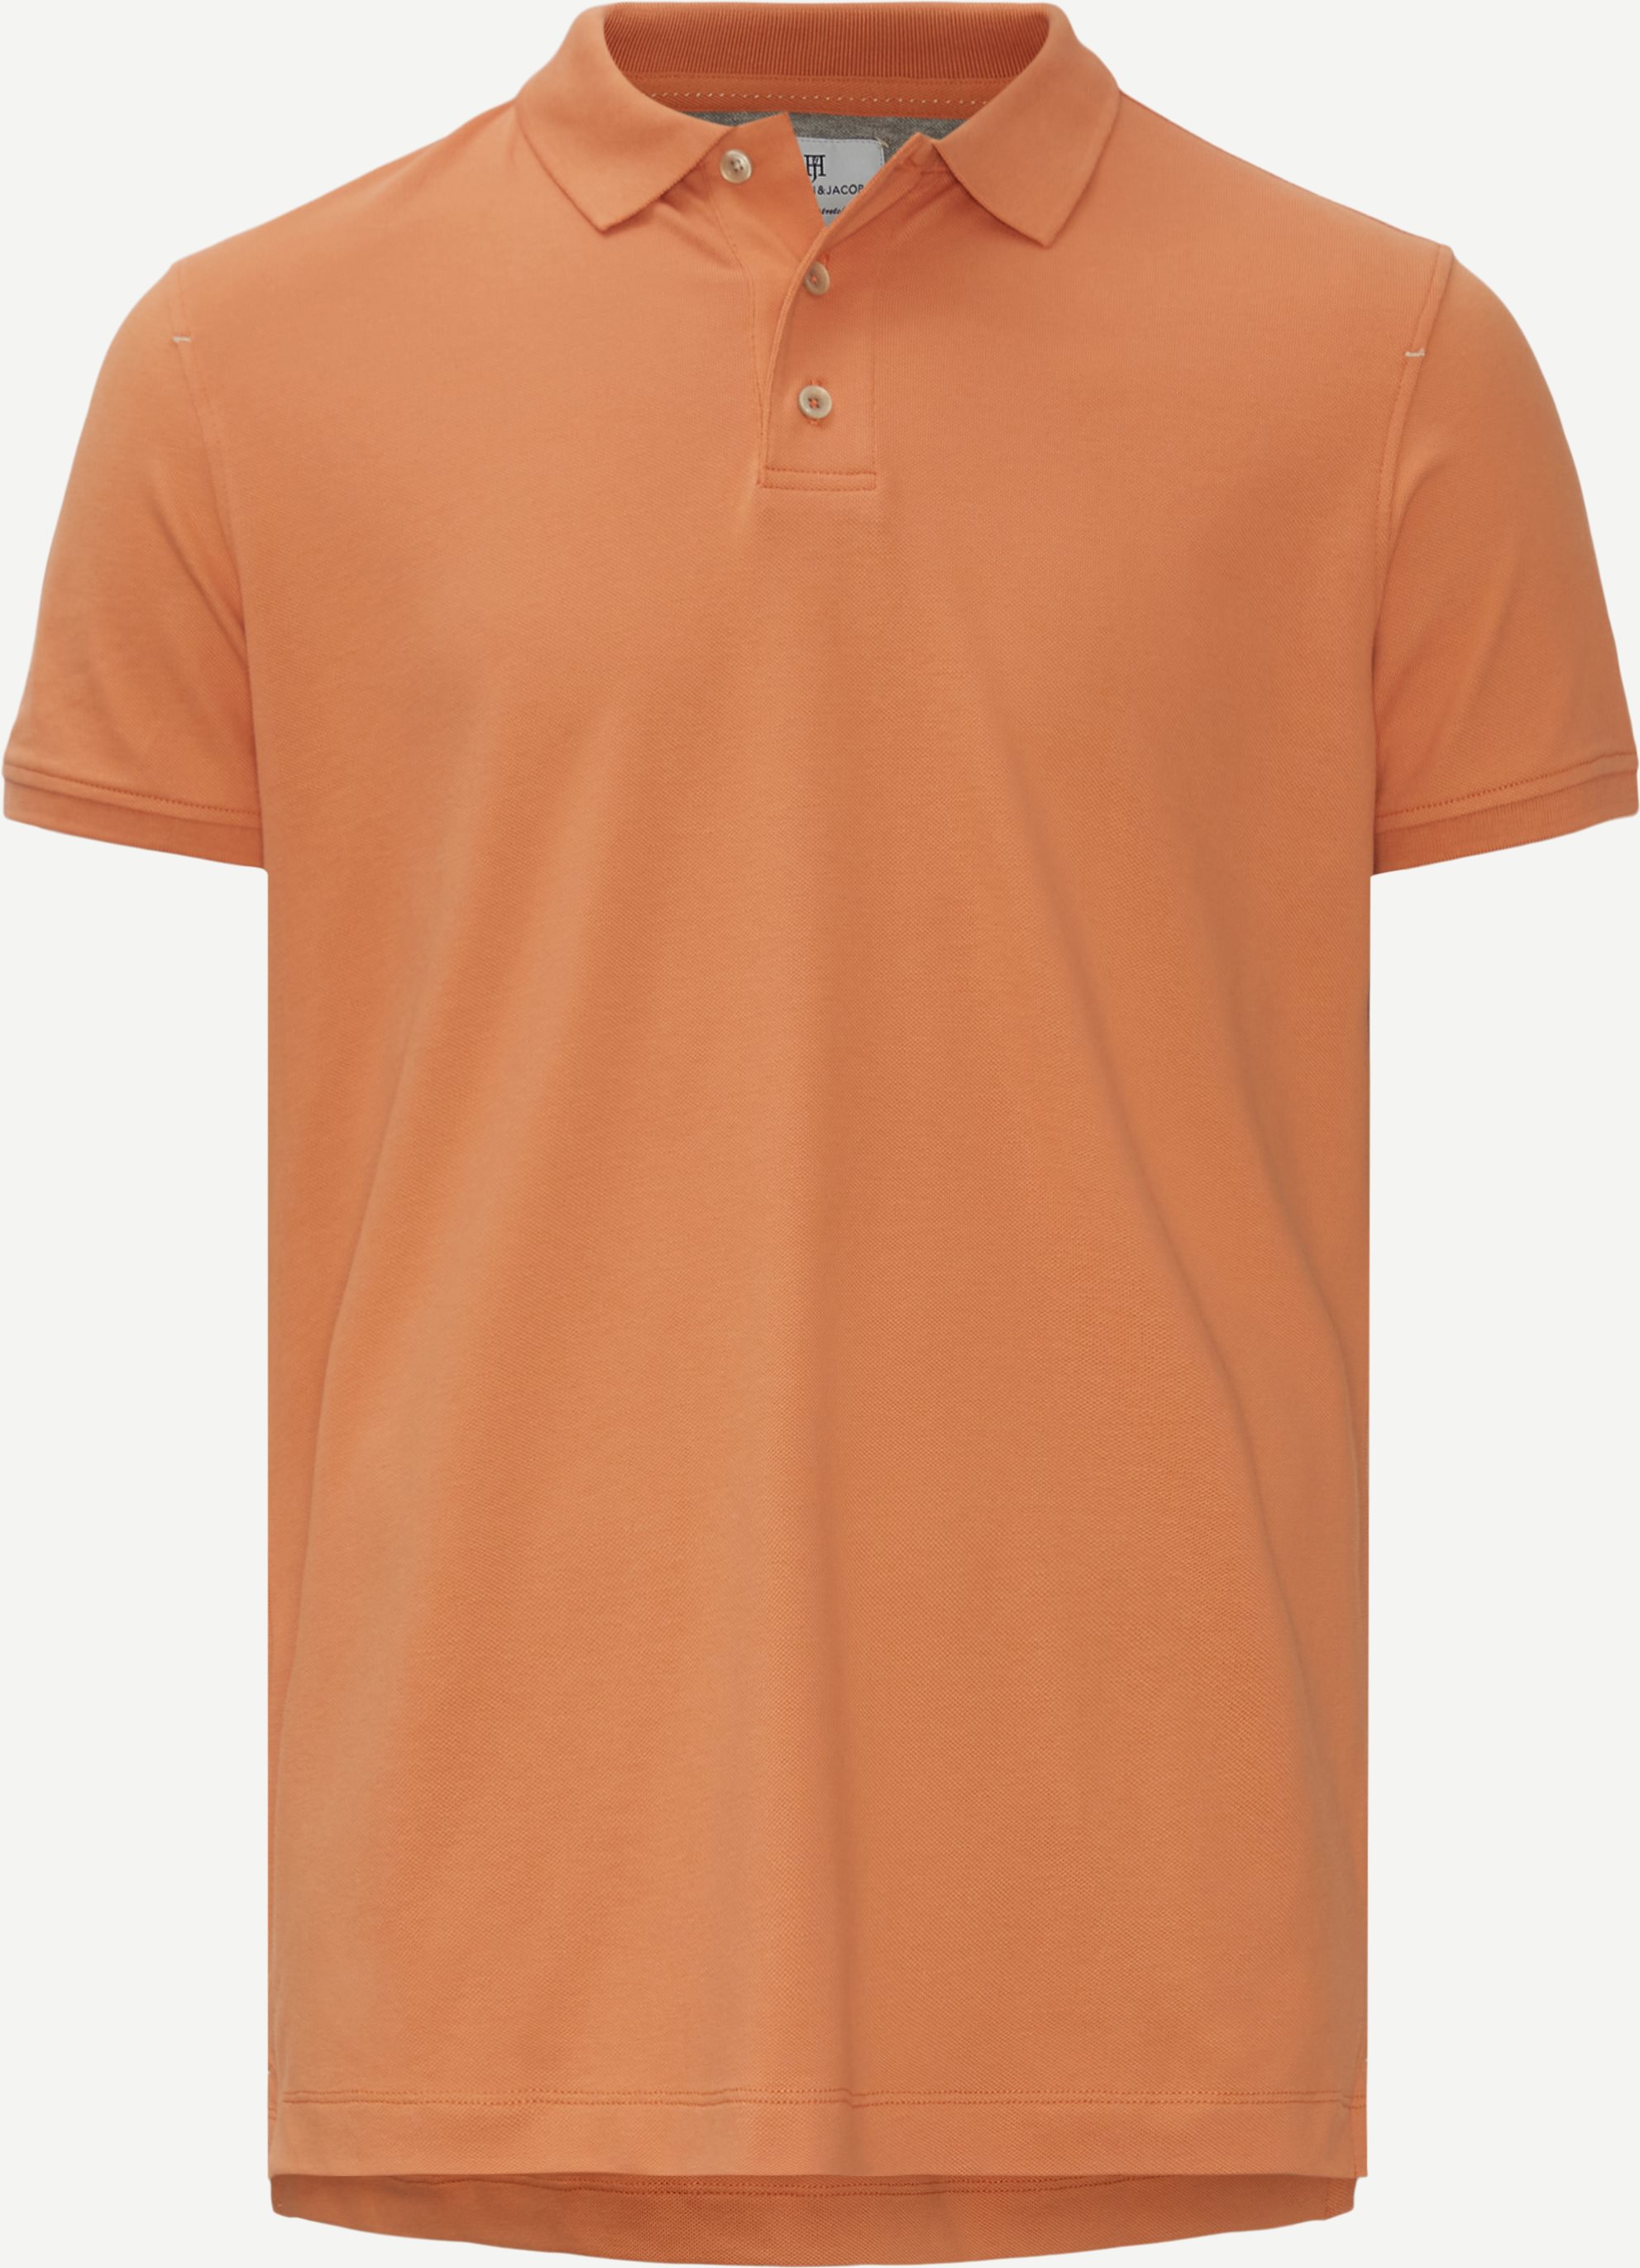 T-shirts - Regular fit - Orange